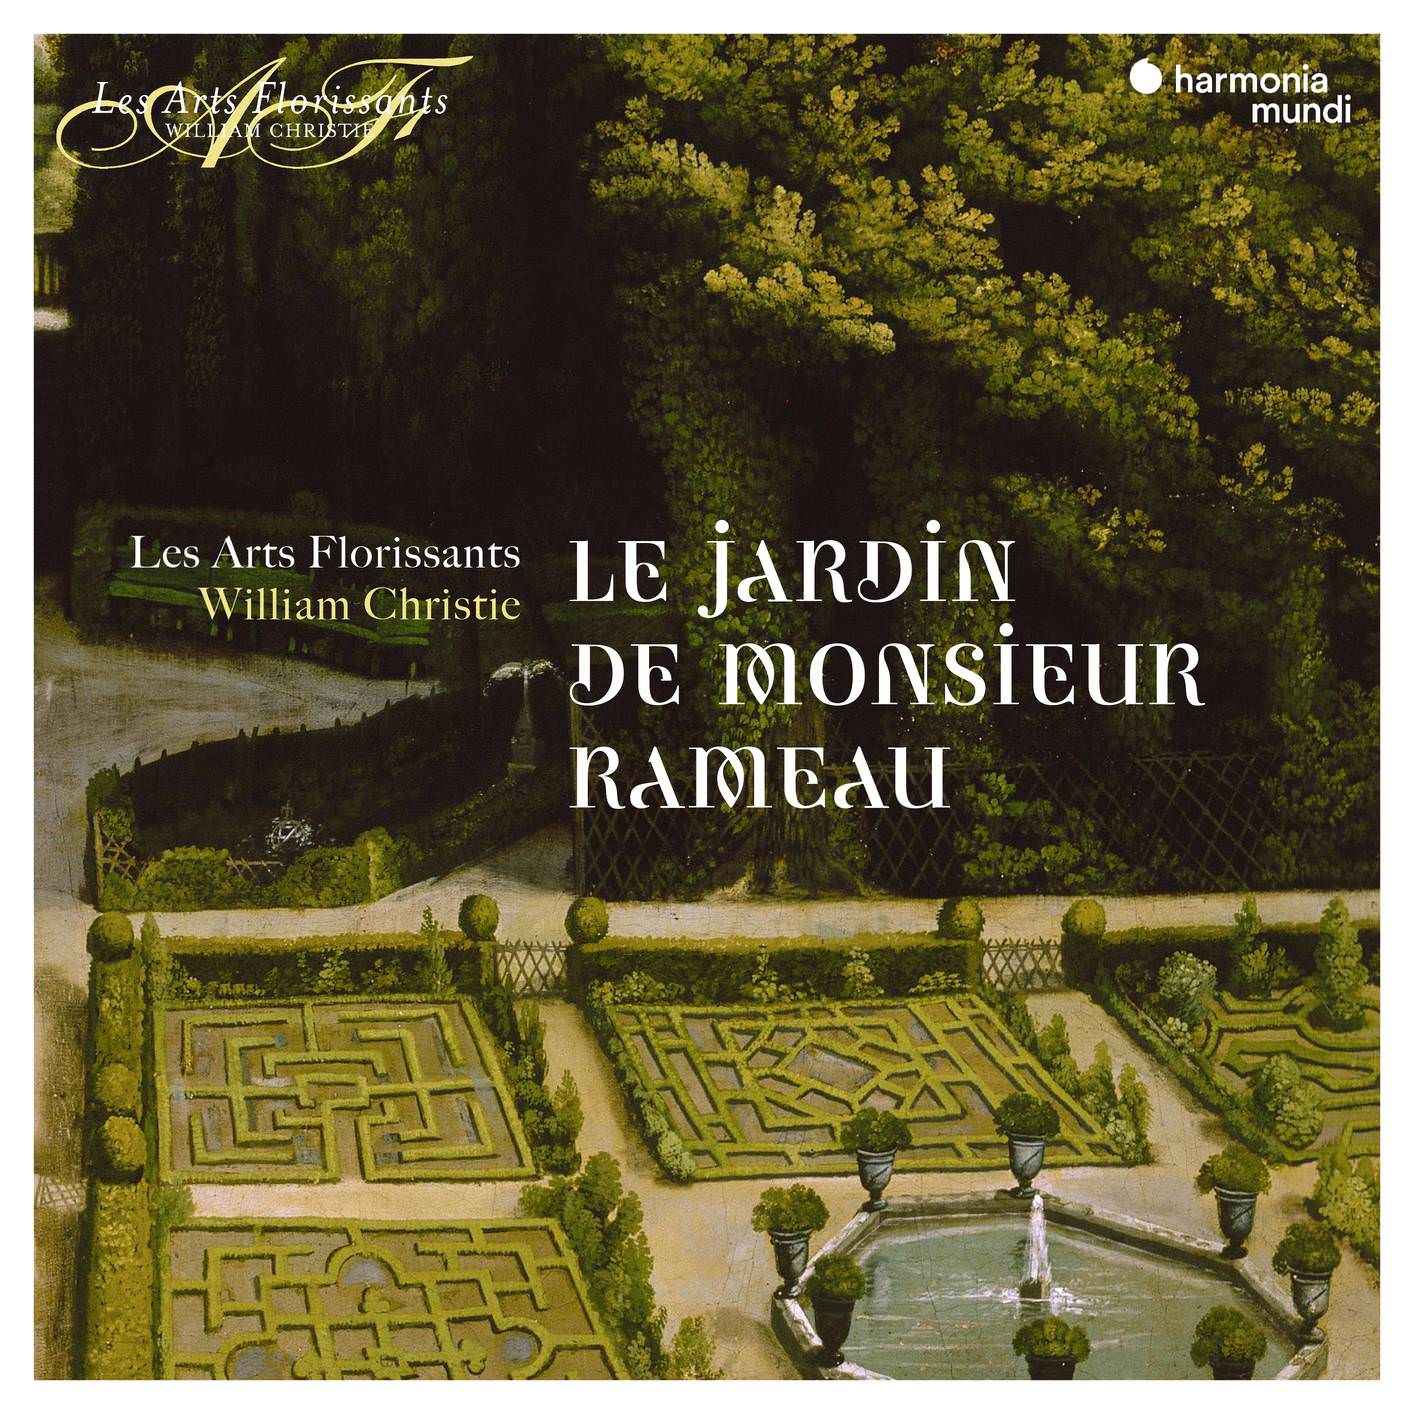 Les Arts Florissants & William Christie – Le Jardin de Monsieur Rameau (2018) [FLAC 24bit/96kHz]